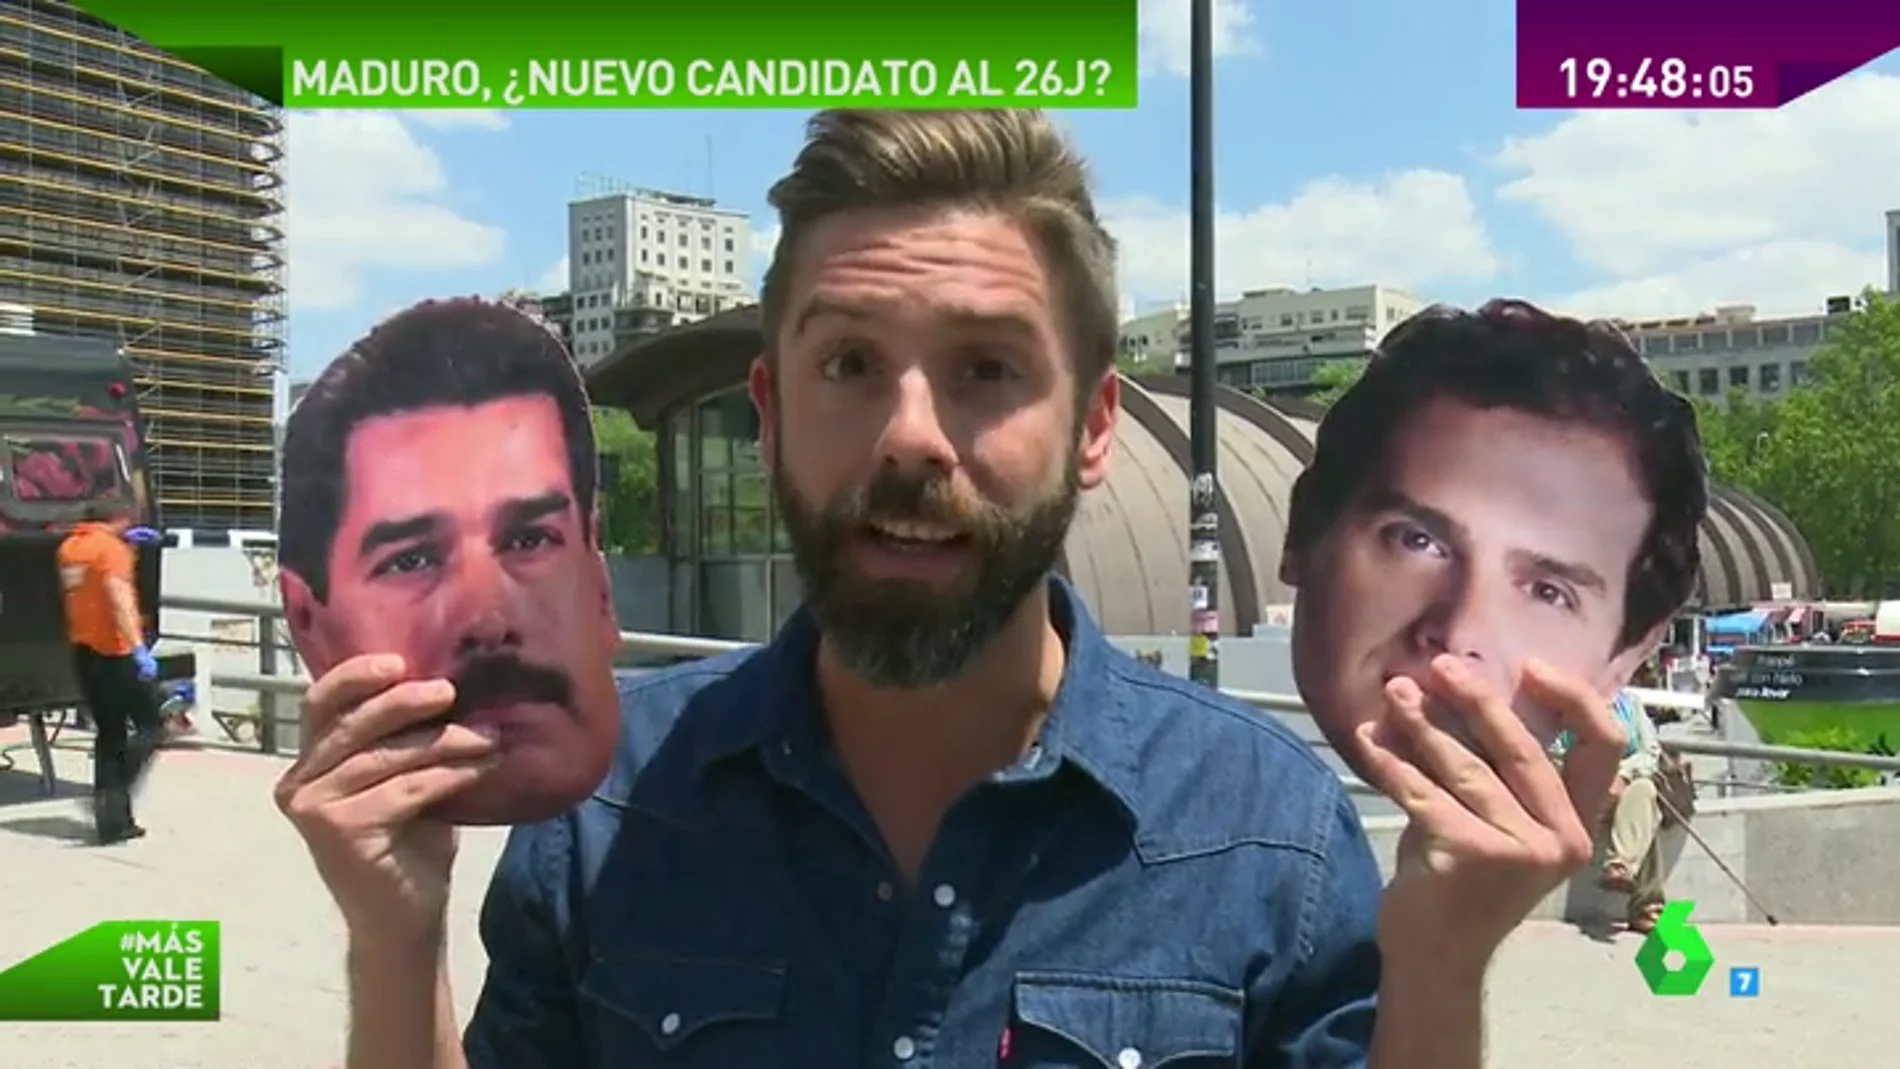 ¿Quién ganaría las elecciones en España, Maduro o Rivera?